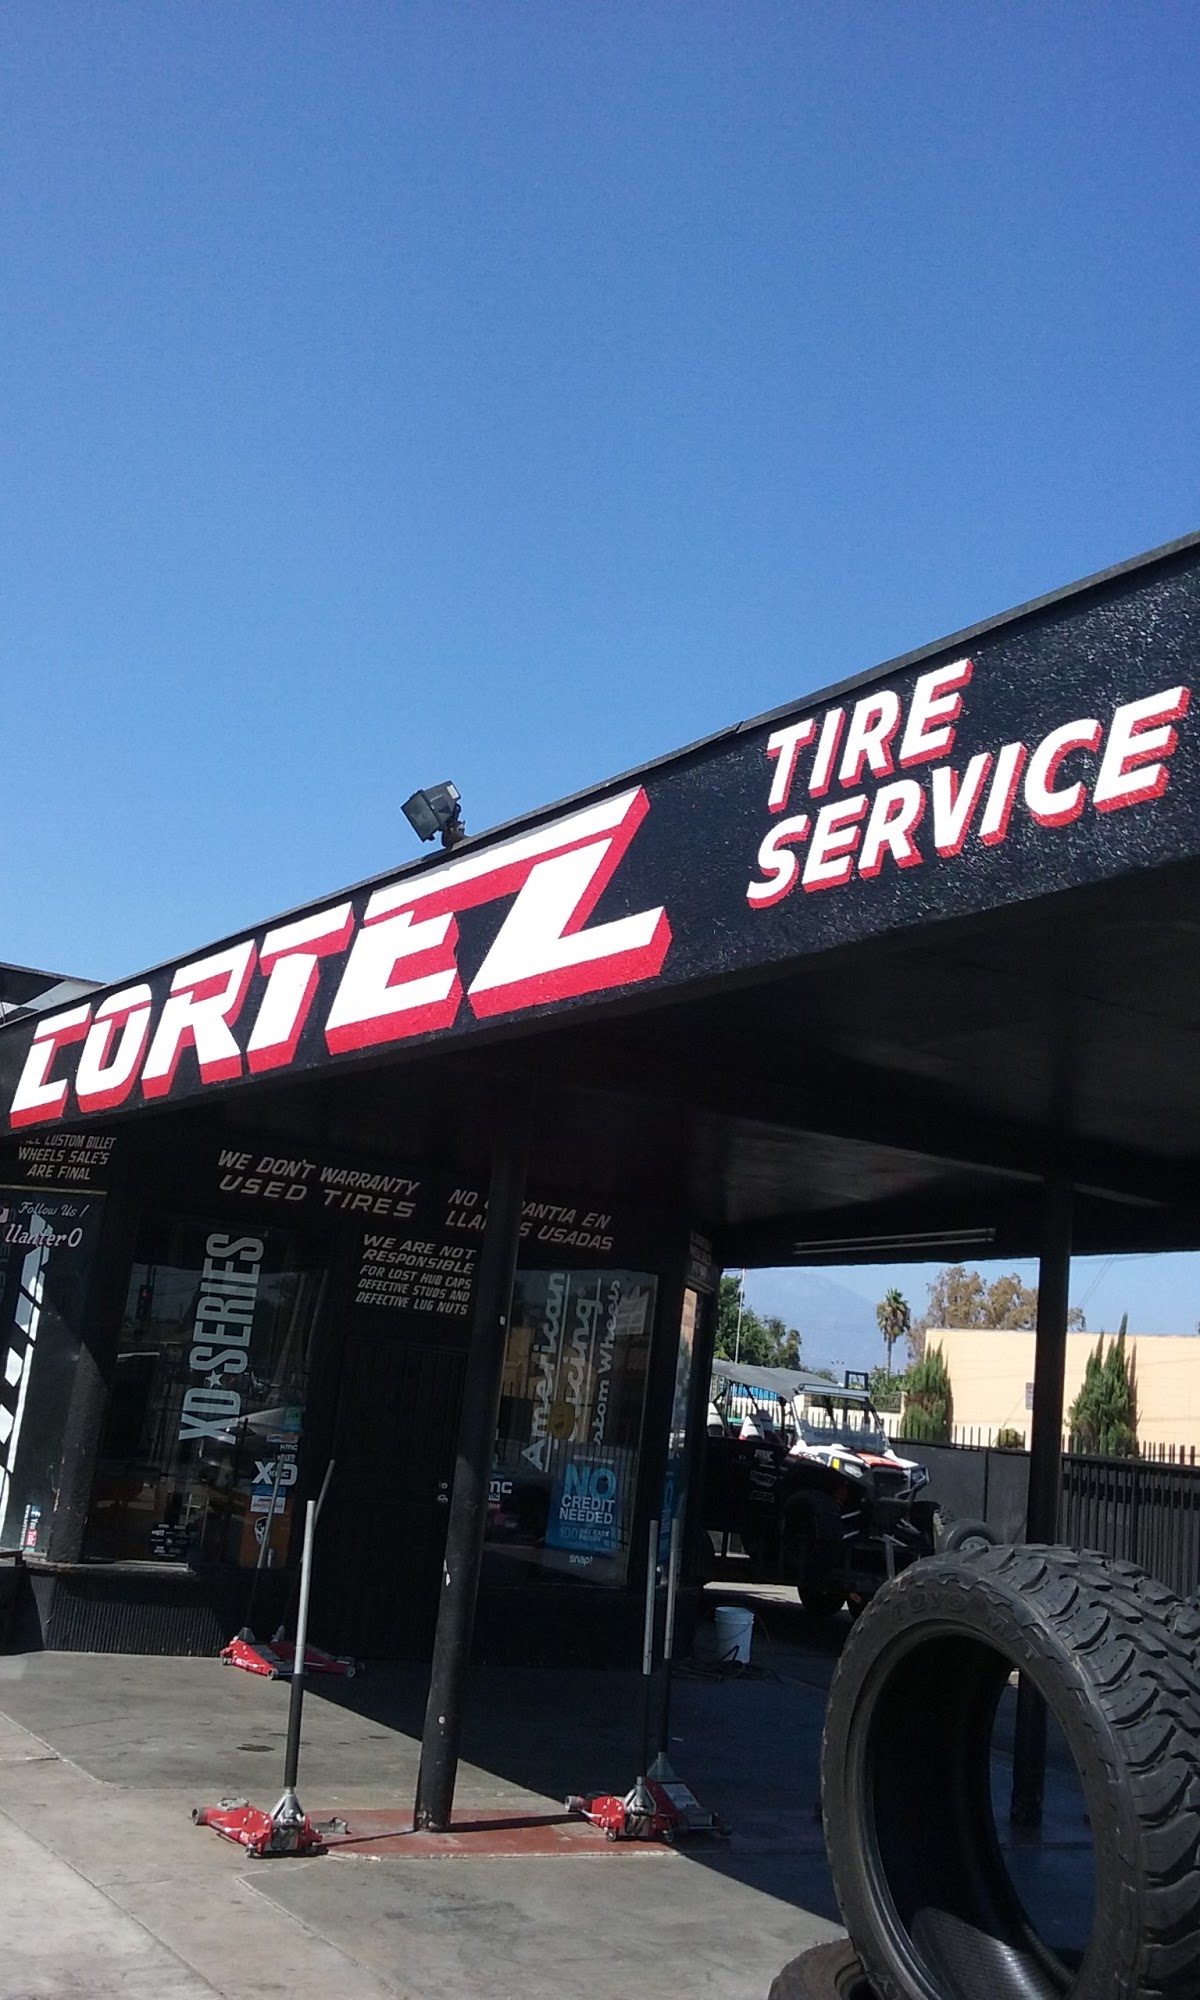 Cortez Tire Services